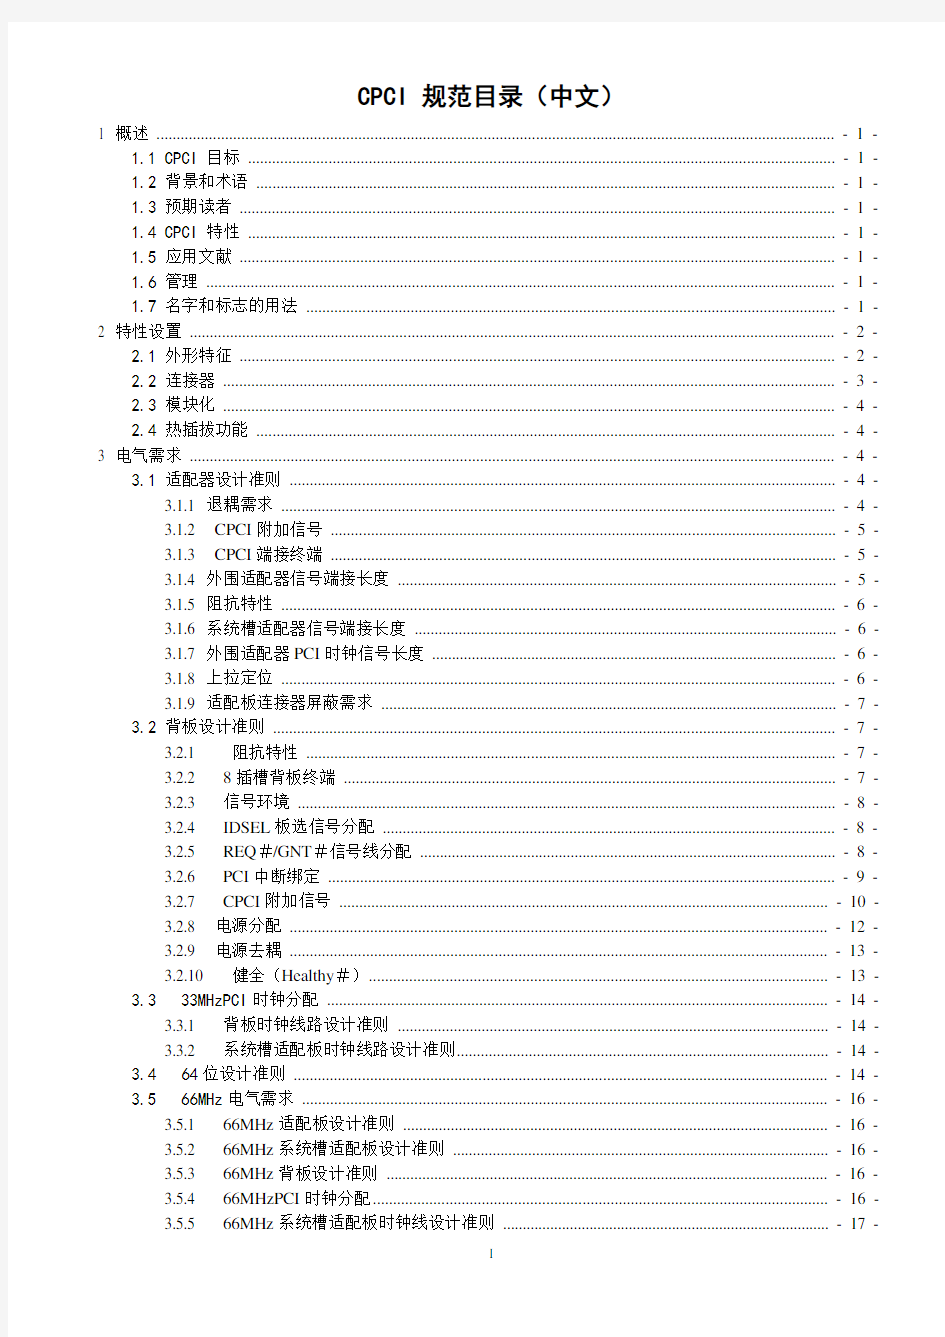 CPCI2.0标准规范(中文)